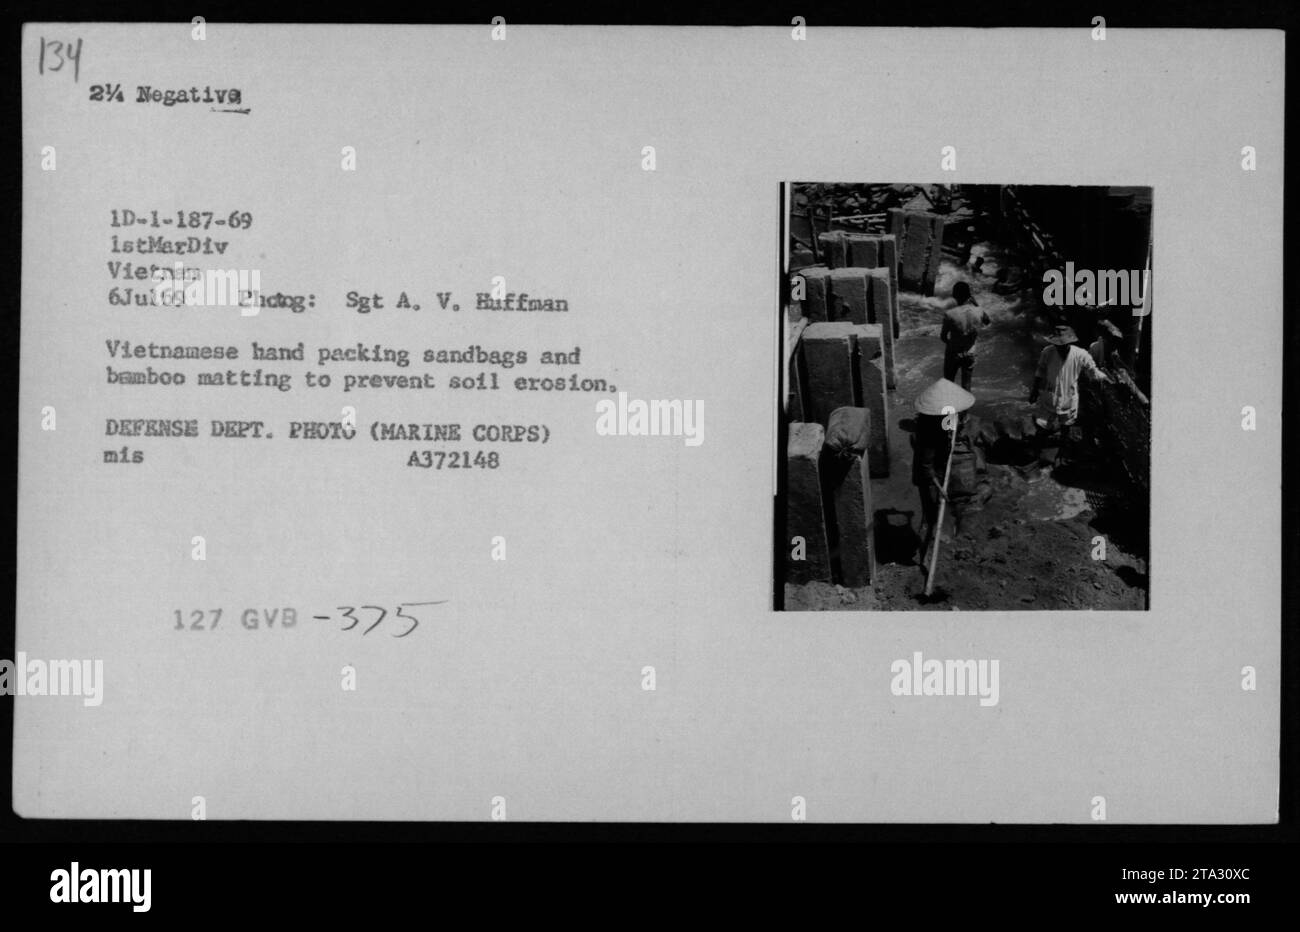 Ein vietnamesischer Zivilist, der sich um Bodenerosion bemüht, indem er Sandsäcke und Bambusmatten in Vietnam verpackt. Dieses Foto wurde am 6. Juli 1969 von Sgt A. V. Huffman vom 1. MarDiv aufgenommen. Es ist Teil einer Serie, die die militärischen Aktivitäten der USA während des Vietnamkriegs dokumentiert. Bildquelle: DEFENSE DEPT. FOTO (MARINE CORPS) MIS A372148 127 GVB-375. Stockfoto